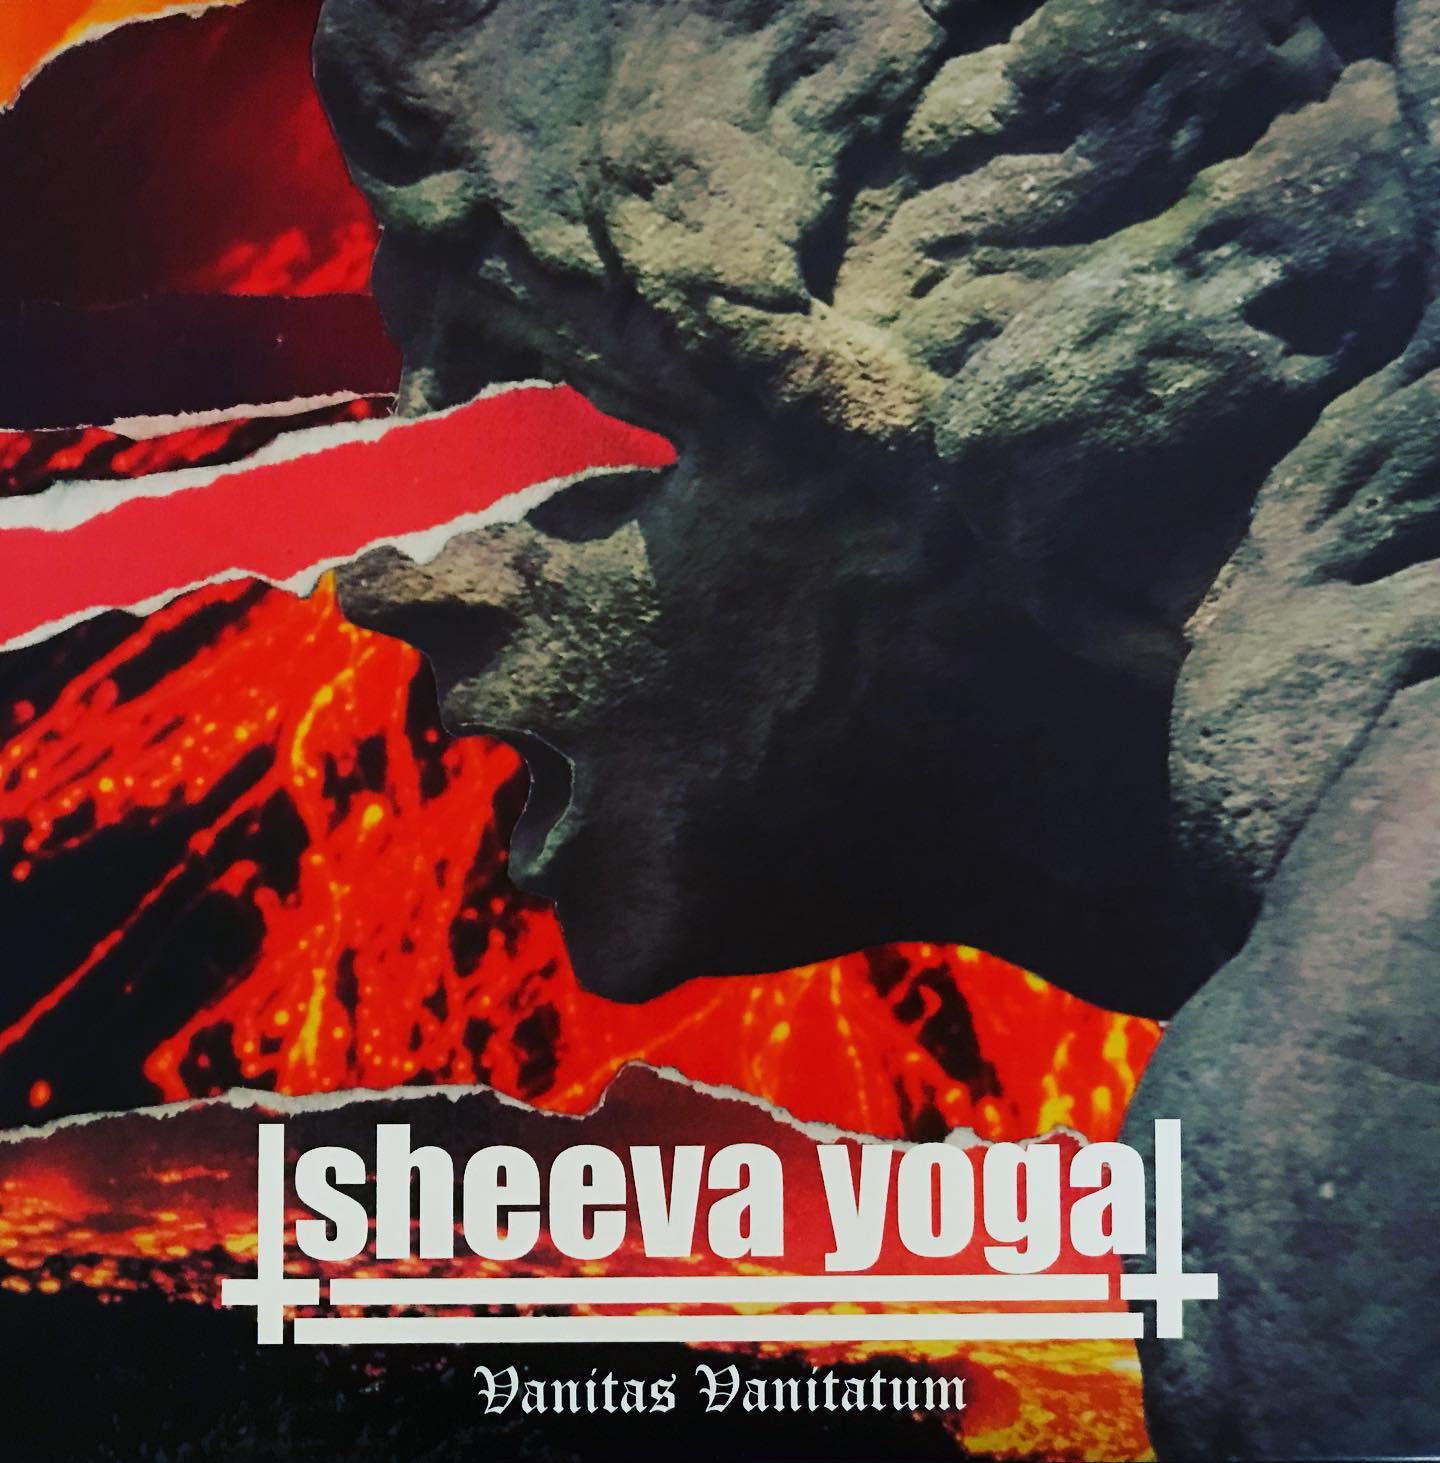 SHEEVA YOGA - Vanitas vanitatum